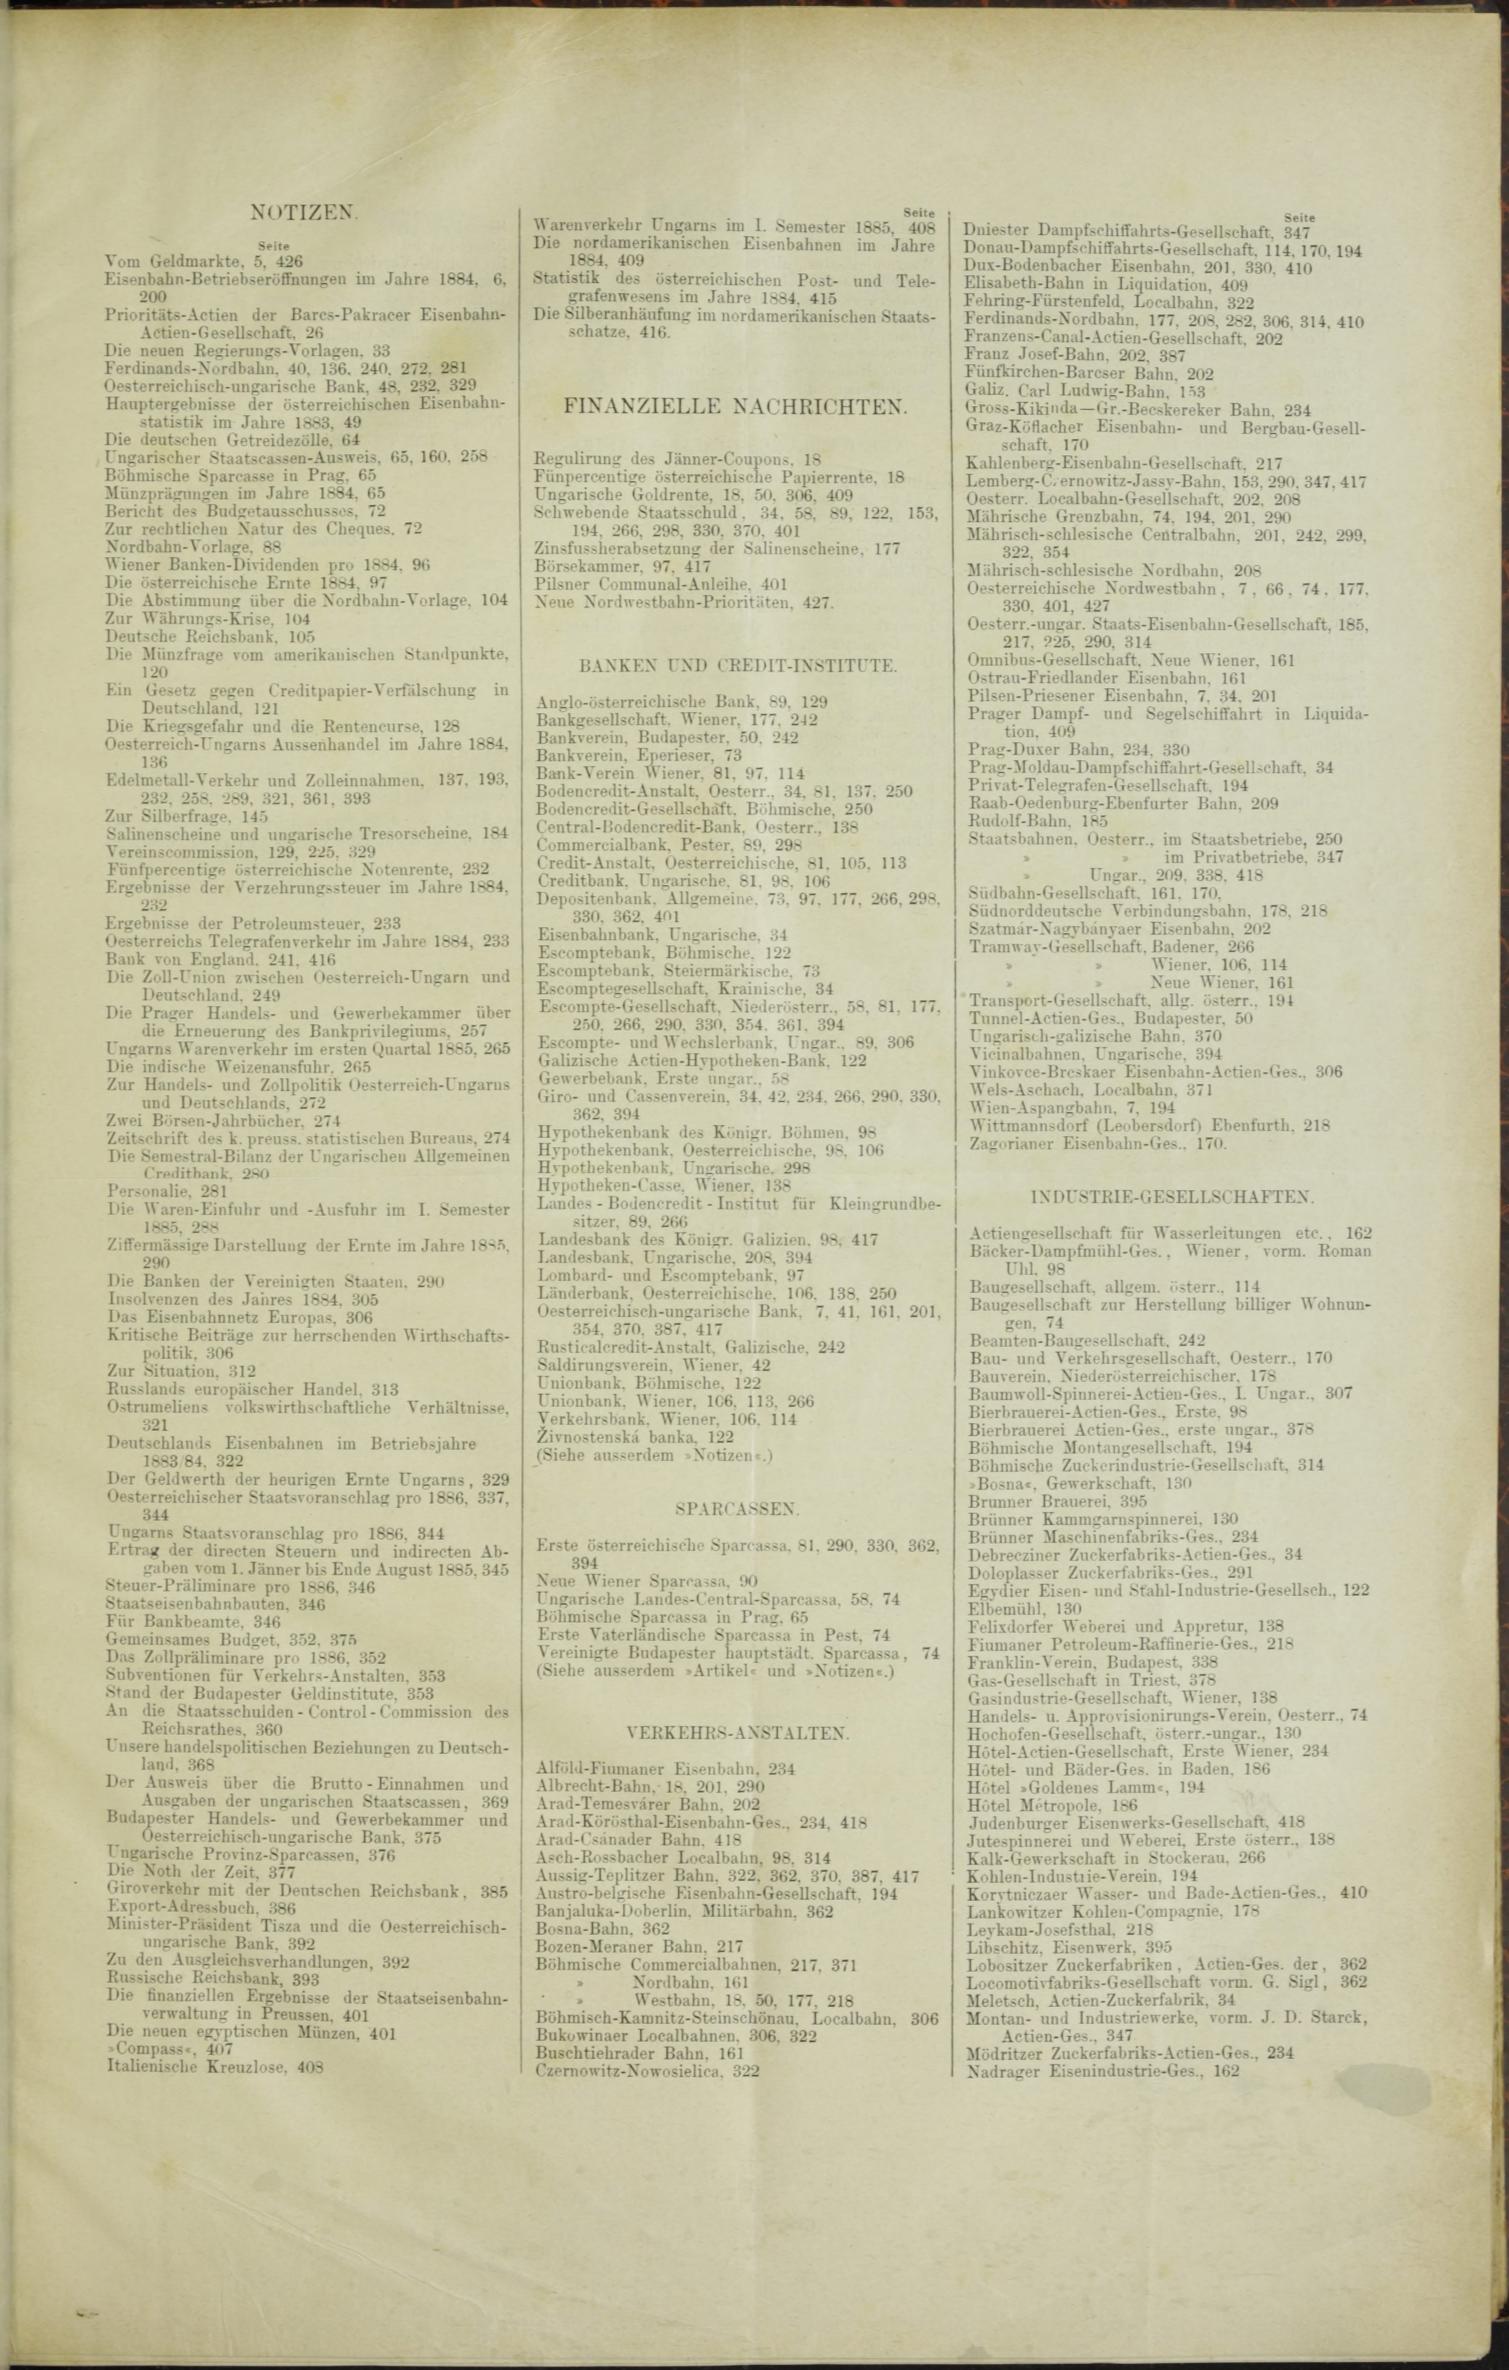 Der Tresor 04.06.1885 - Seite 11